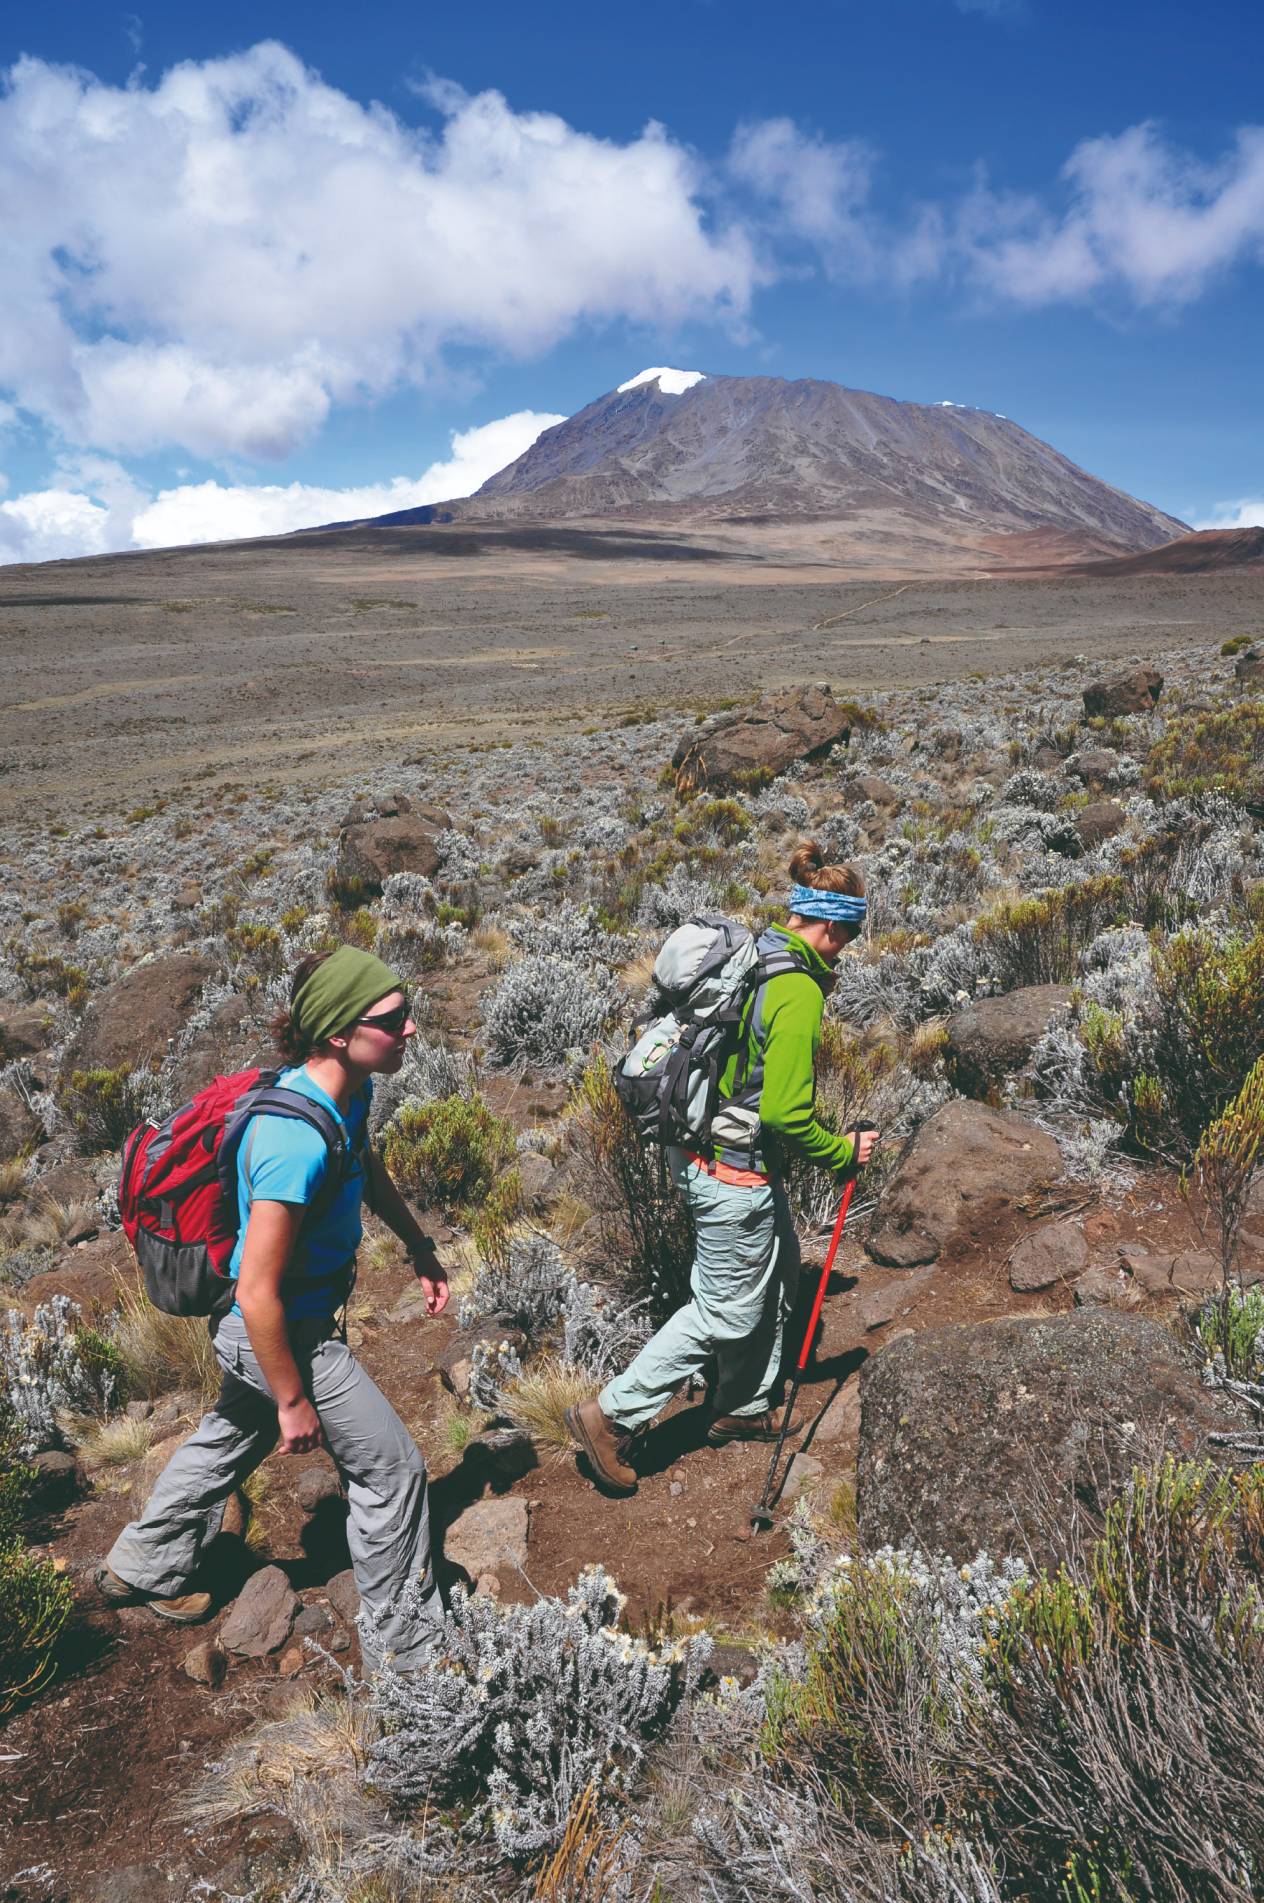 Randonneurs sur la route Marangu, à l'ascenscion du Kilimandjaro